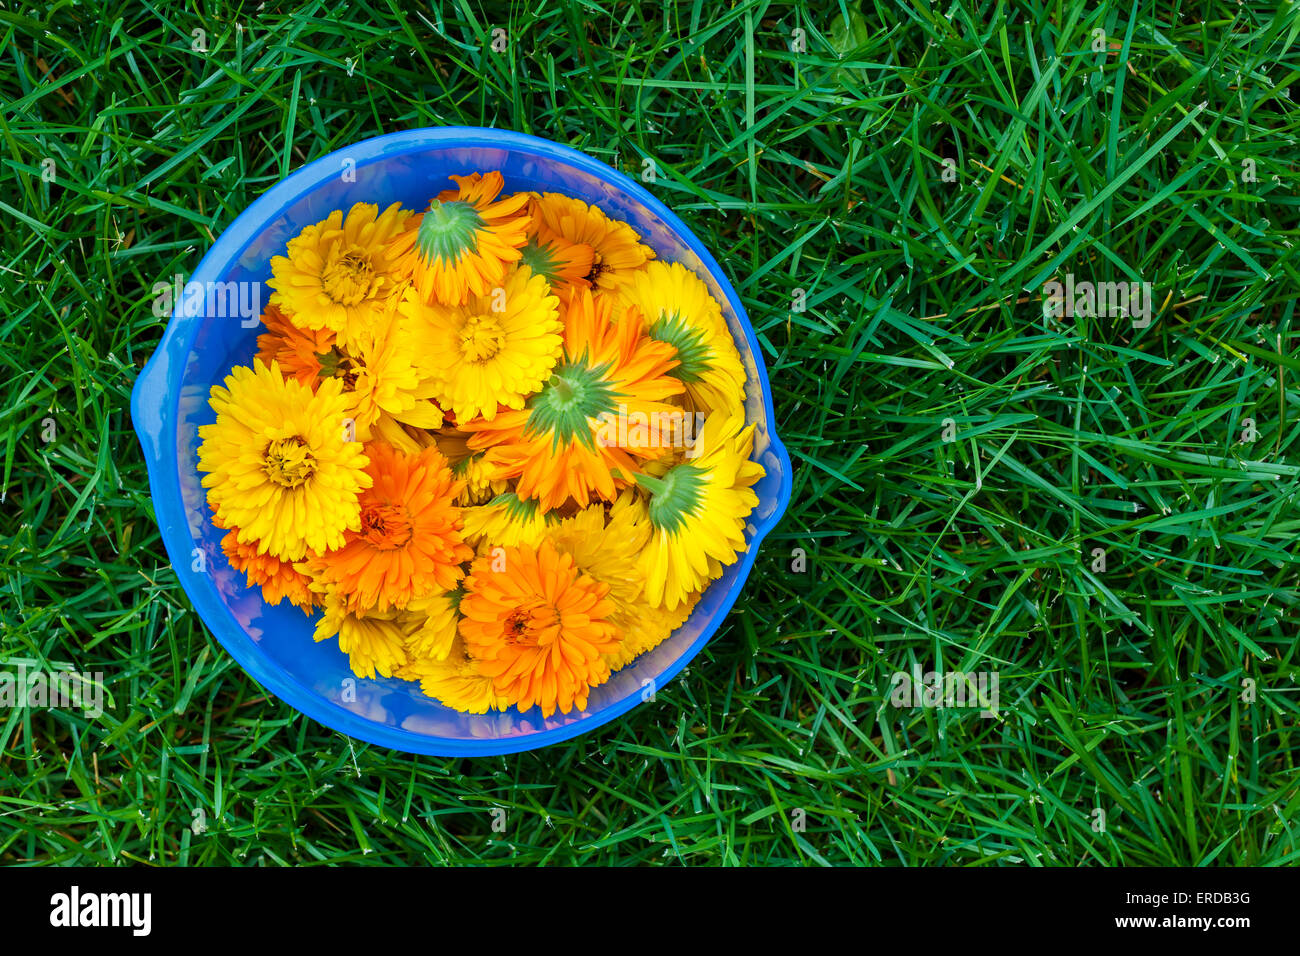 Appena raccolto medicinali fiori di calendula in vaso blu su erba verde Foto Stock